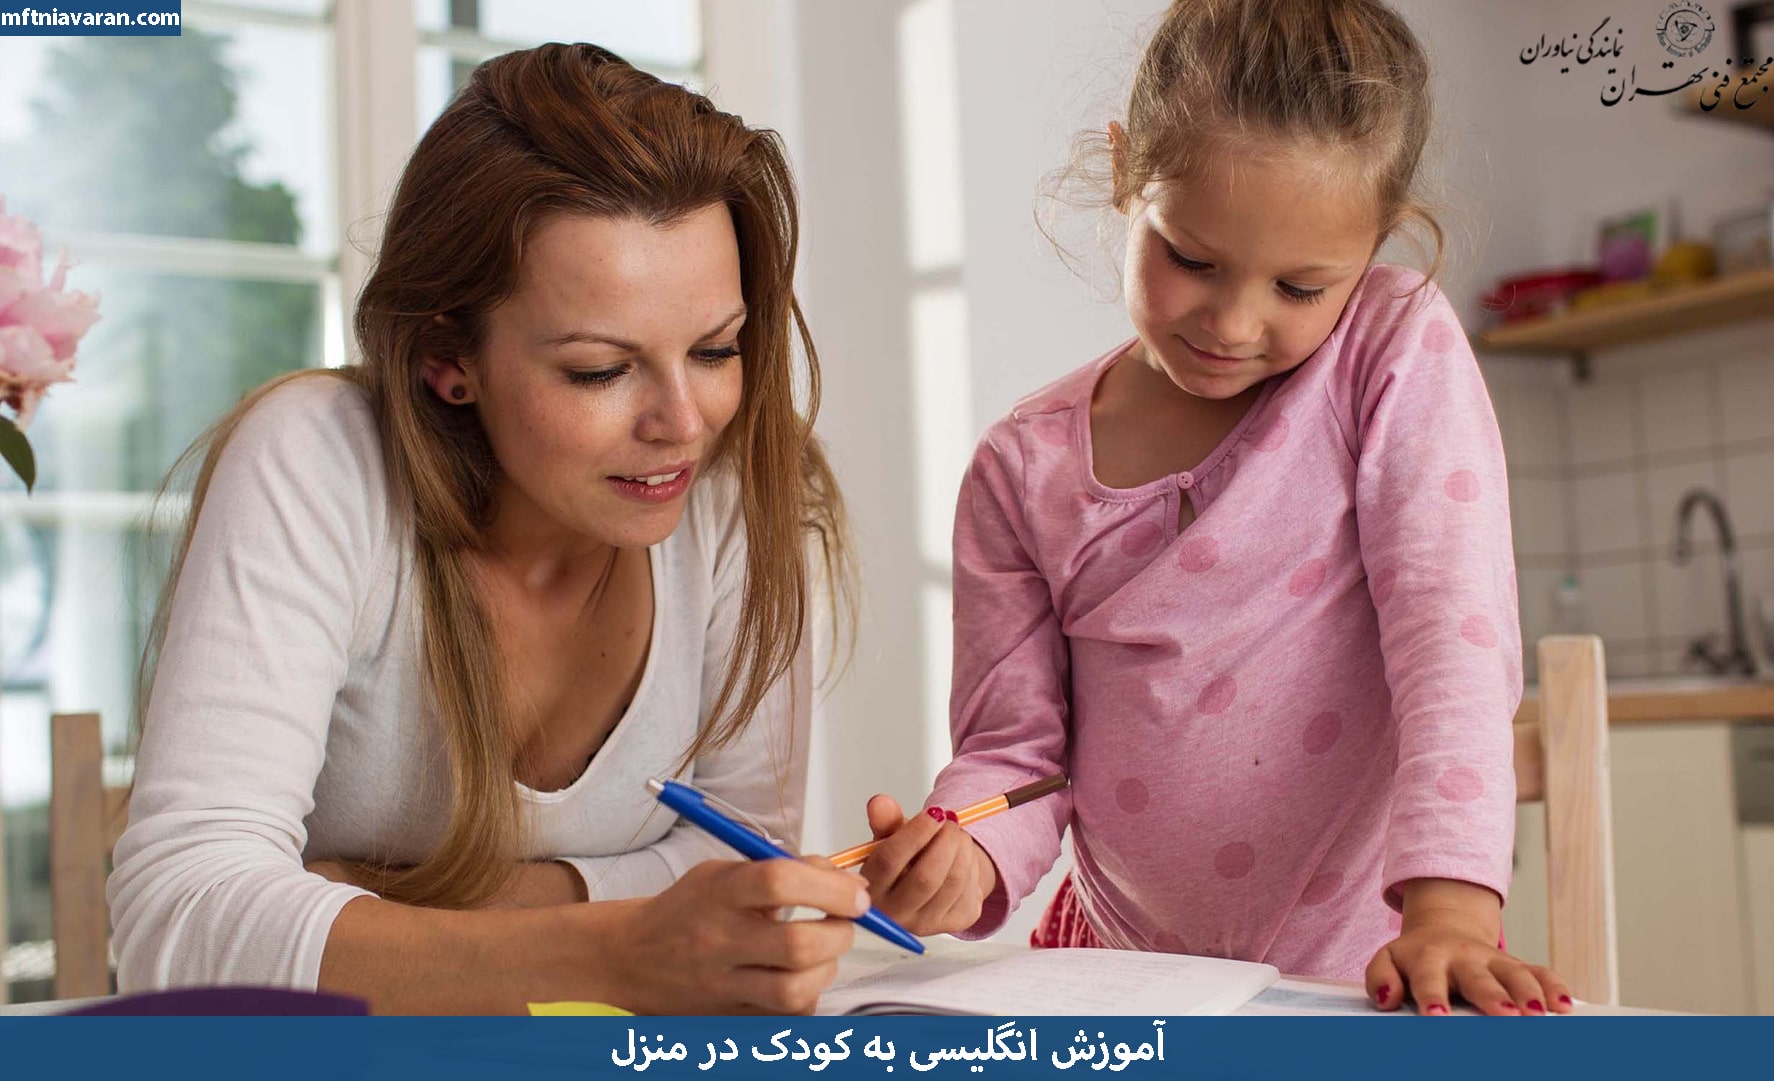 آموزش انگلیسی به کودک در منزل